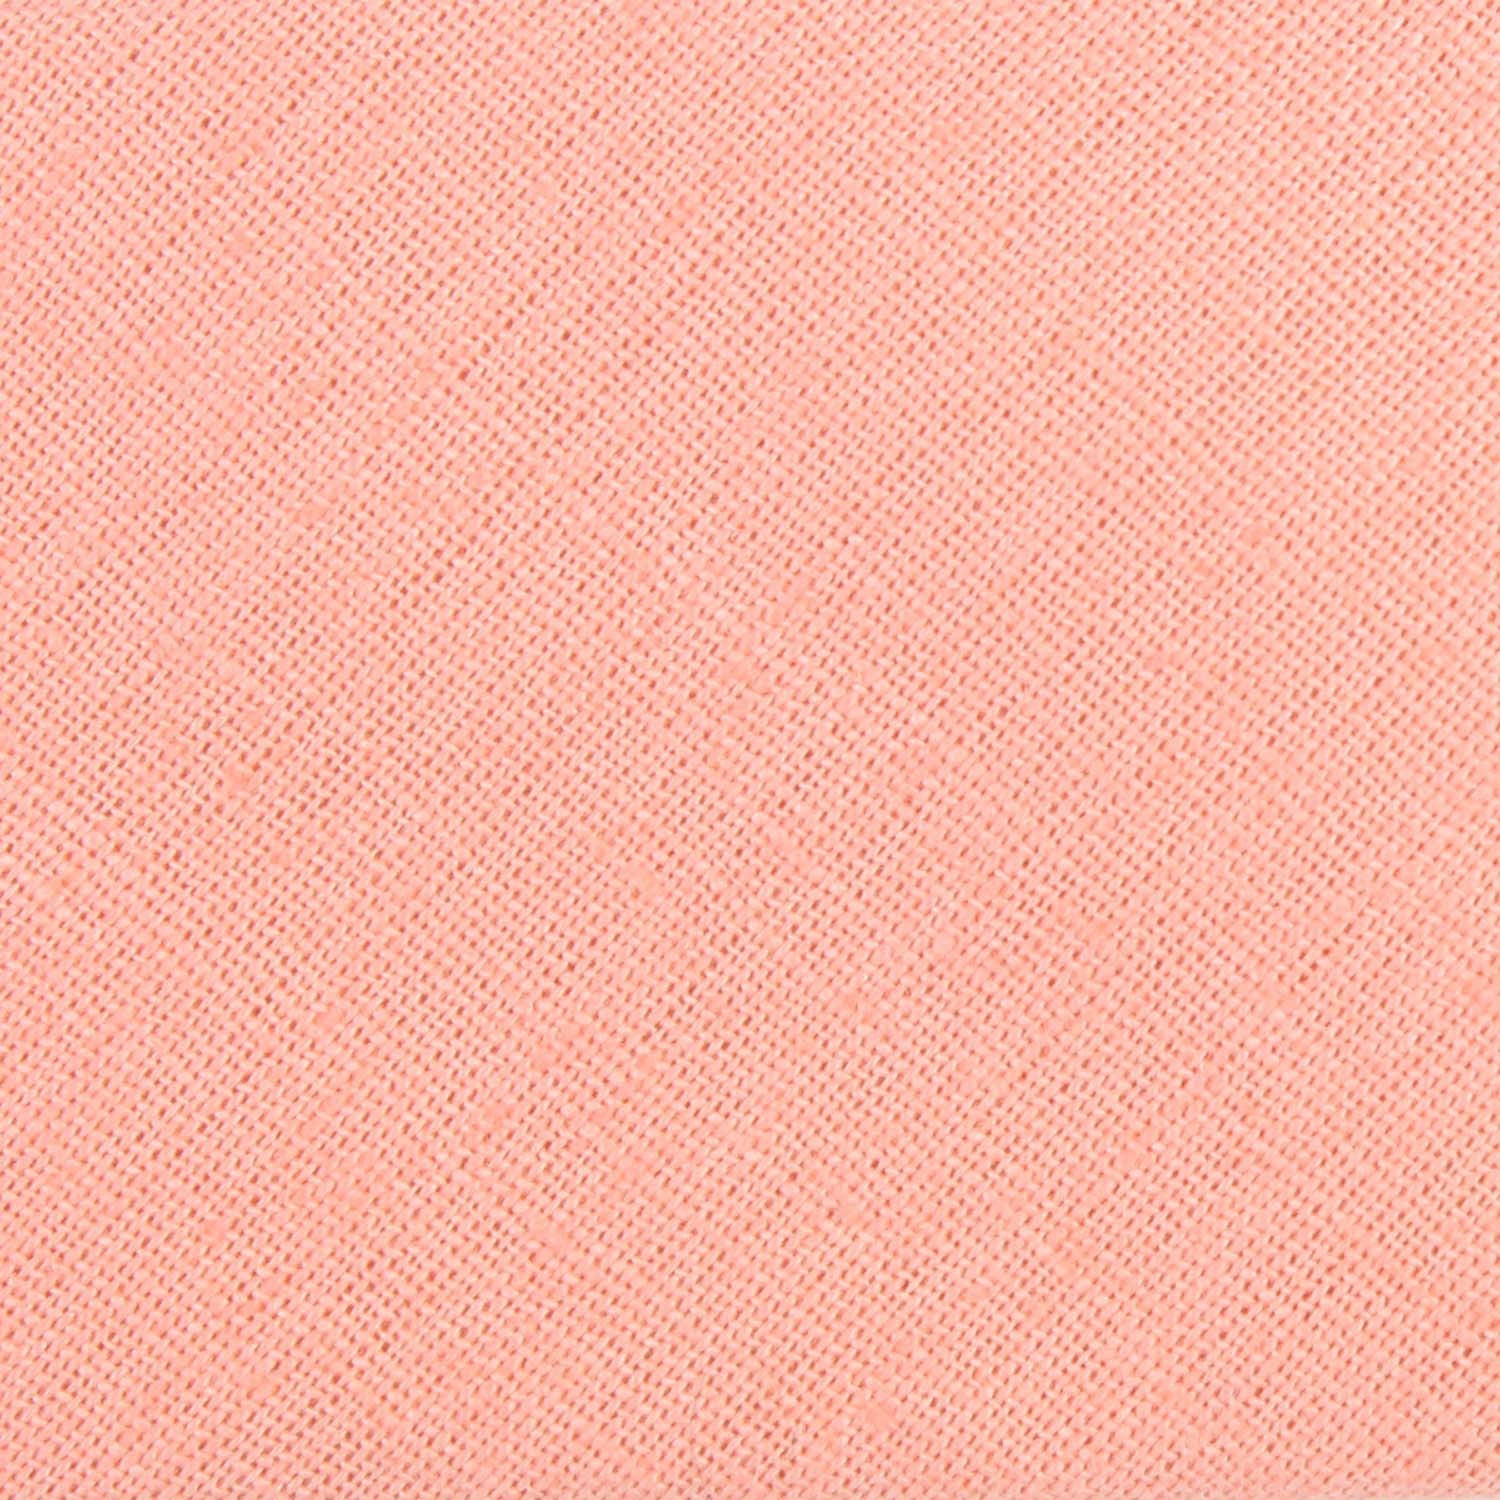 Apricot Peach Slub Linen Fabric Bow Tie L167